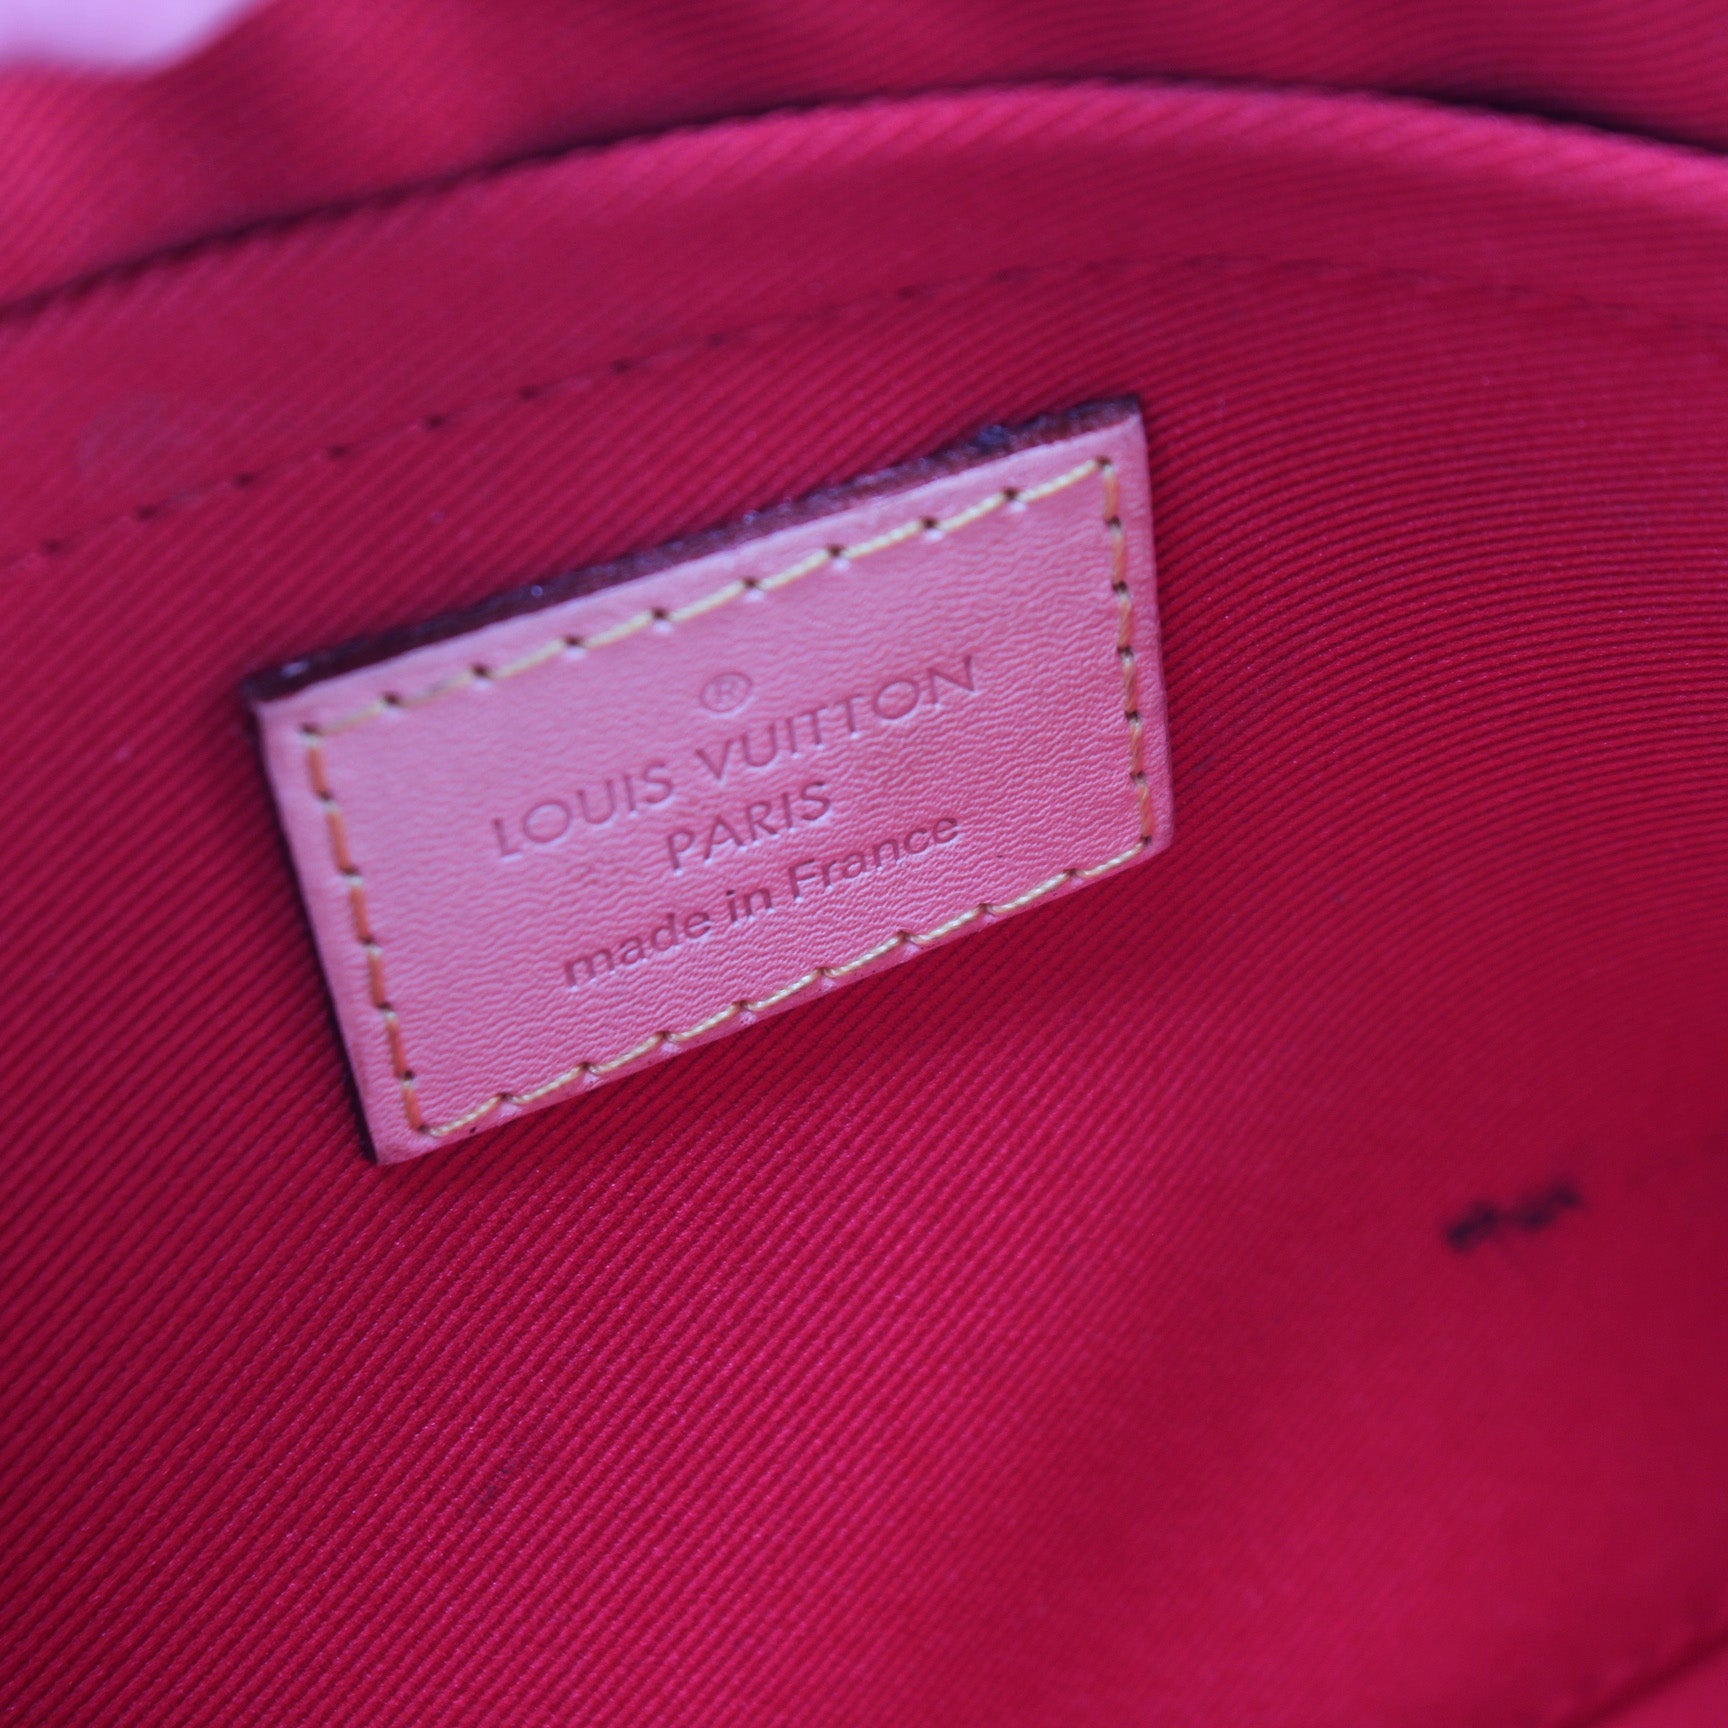 Very One Handle Monogram Calfskin – Keeks Designer Handbags